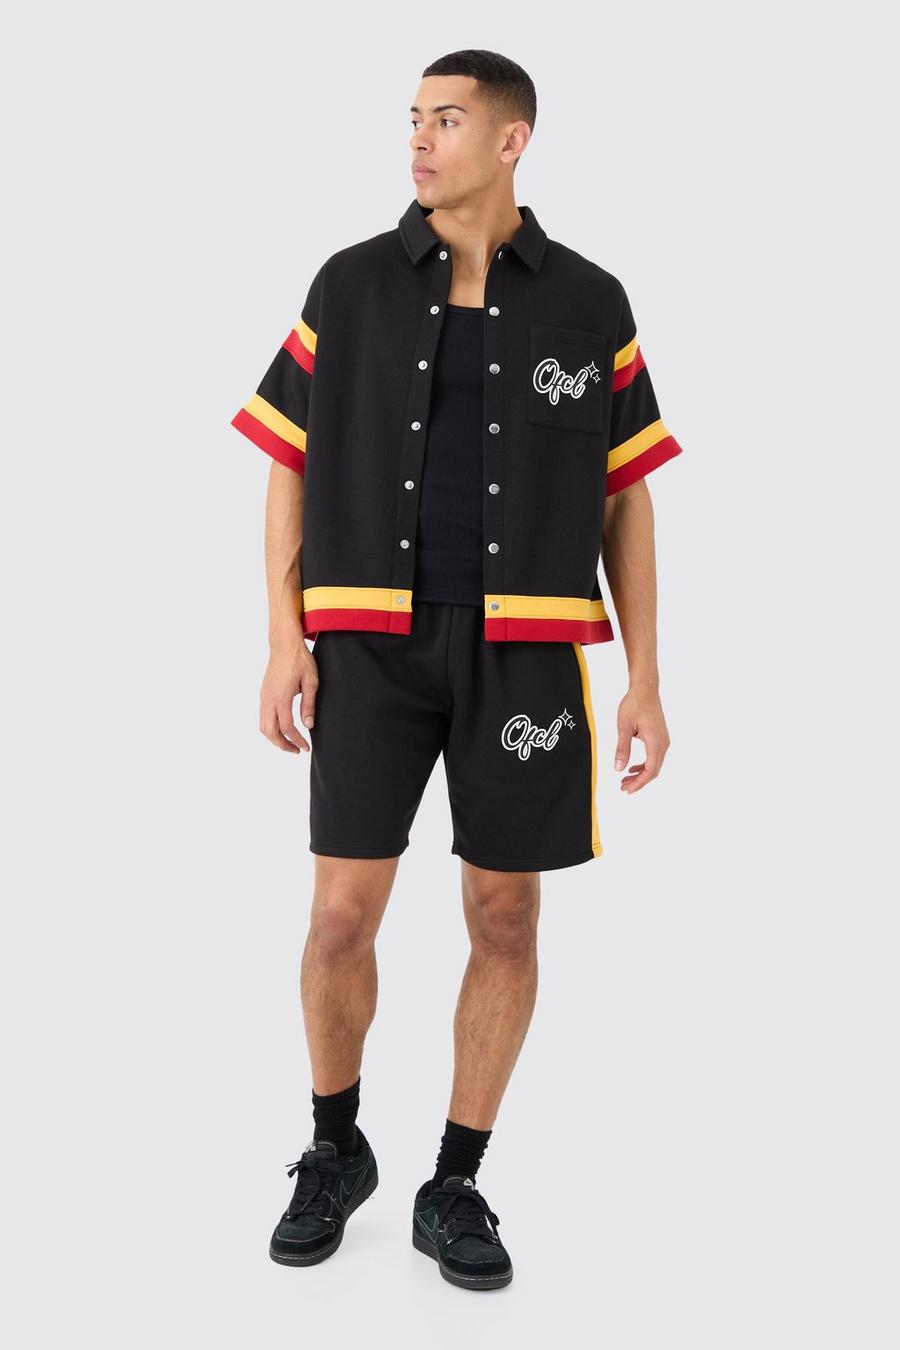 Ofcl Baseball Shirt And Shorts Set, Black